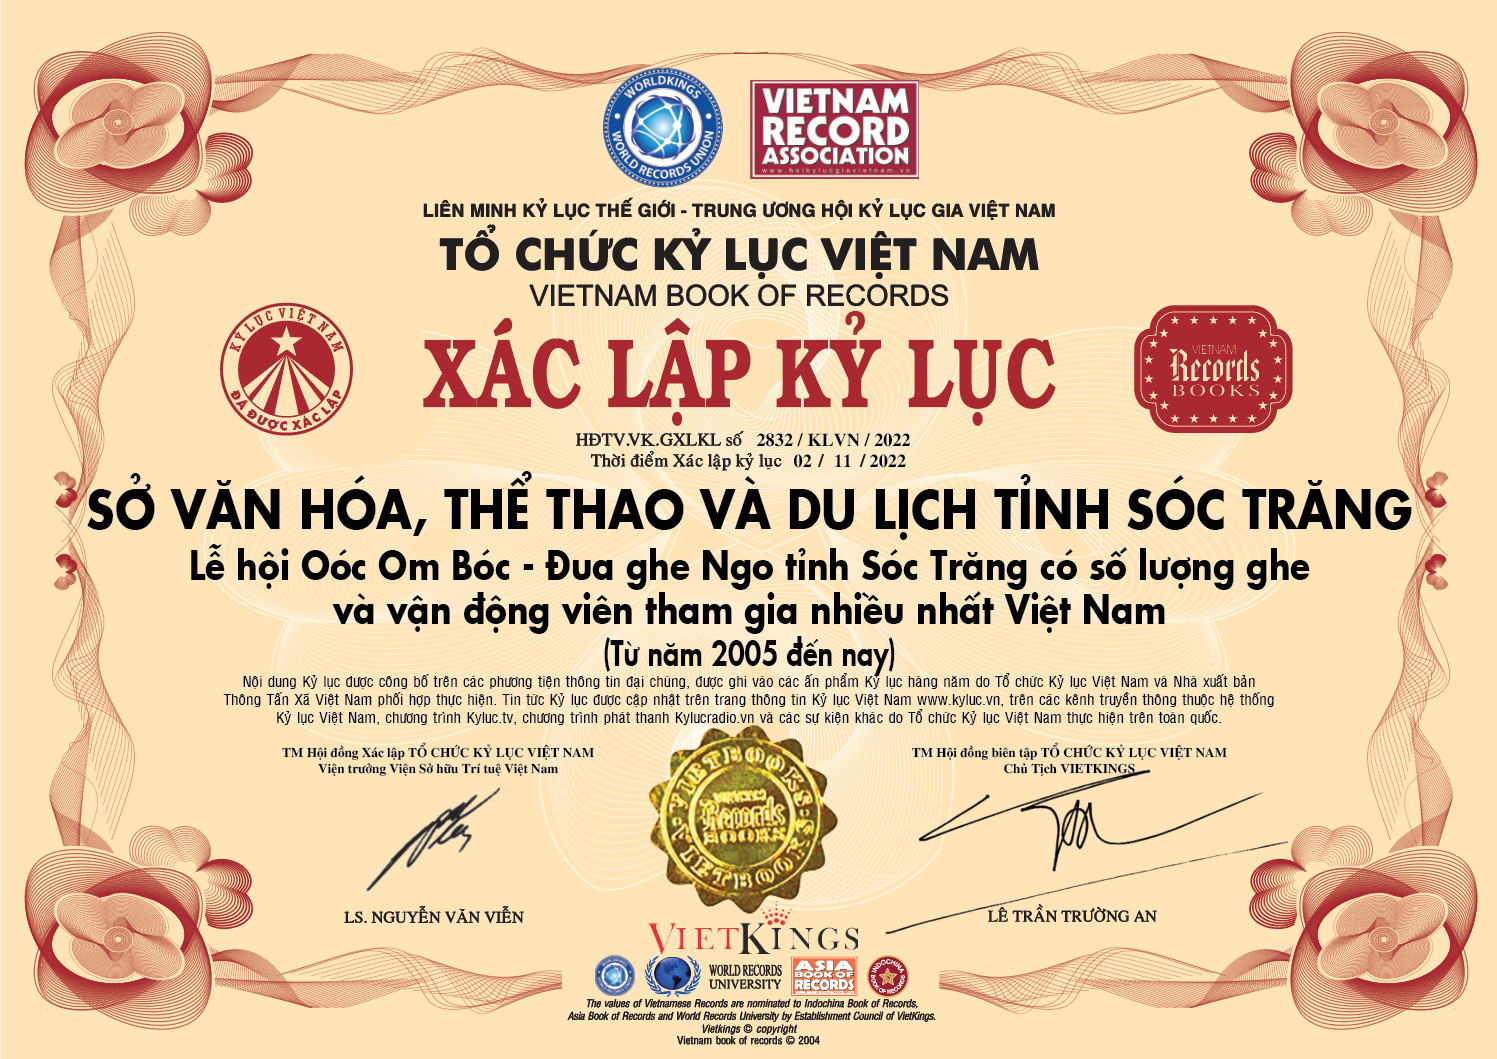 Kỷ lục Việt Nam cho Lễ hội được chính thức công nhận từ ngày 02/11/2022. Ảnh: VietKings.